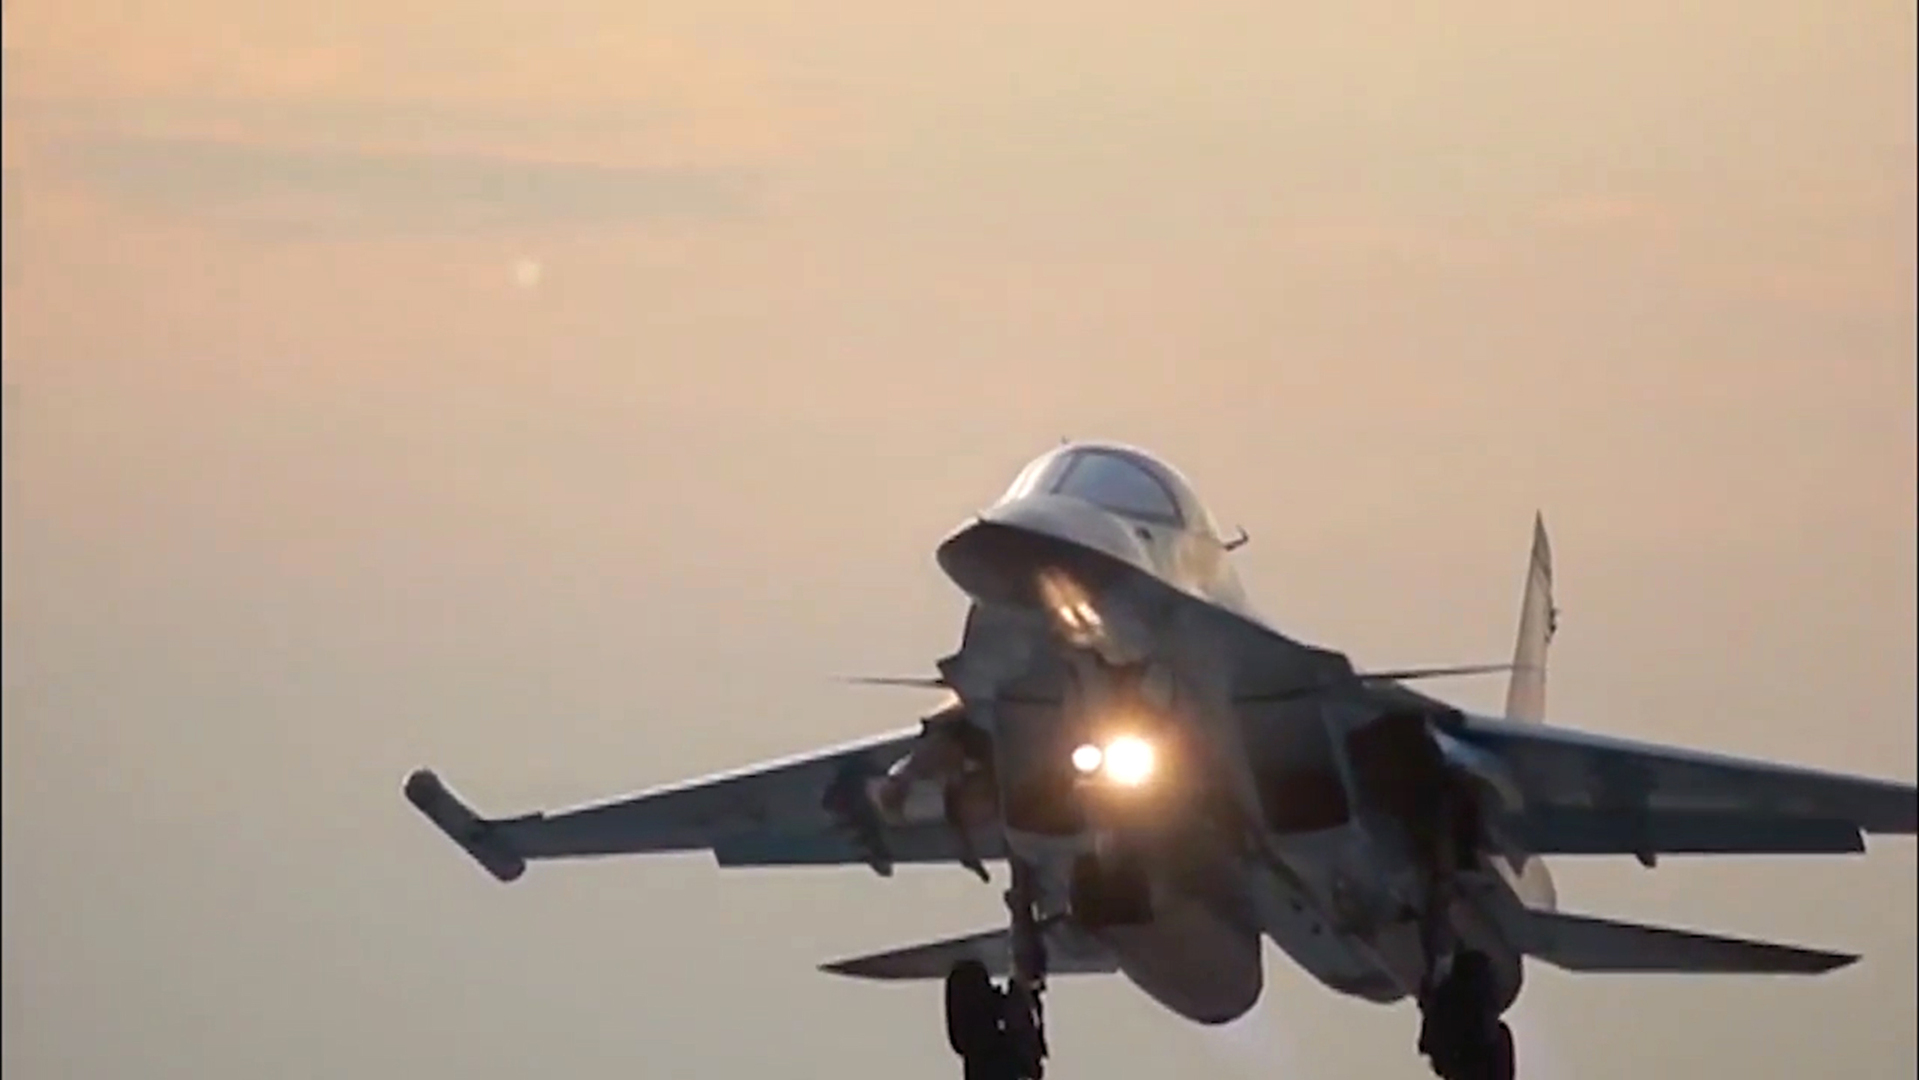 سينتكوم: الطائرات الروسية بأسلحتها المتنوعة تحلق فوق قاعدة التنف الأمريكية في سوريا باستمرار